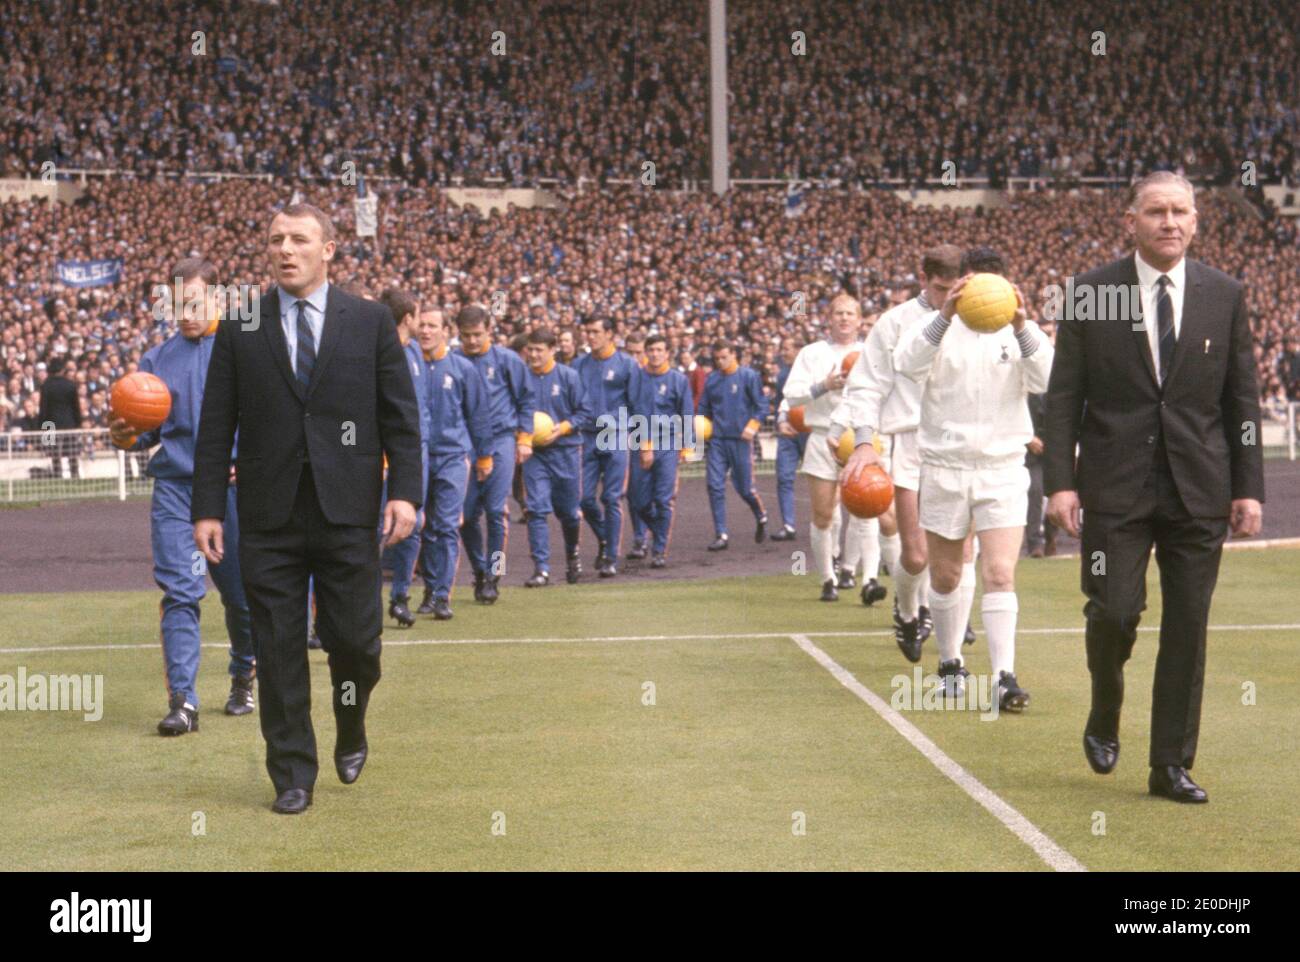 File foto datata 20/05/67 dell'allora manager del Chelsea Tommy Dochrety (a sinistra) e poi del manager del Tottenham Hotspur Bill Nicholson che ha portato i loro team in campo per la finale della fa Cup. Il signor Dochrety è morto all'età di 92 anni a seguito di una lunga malattia. Foto Stock